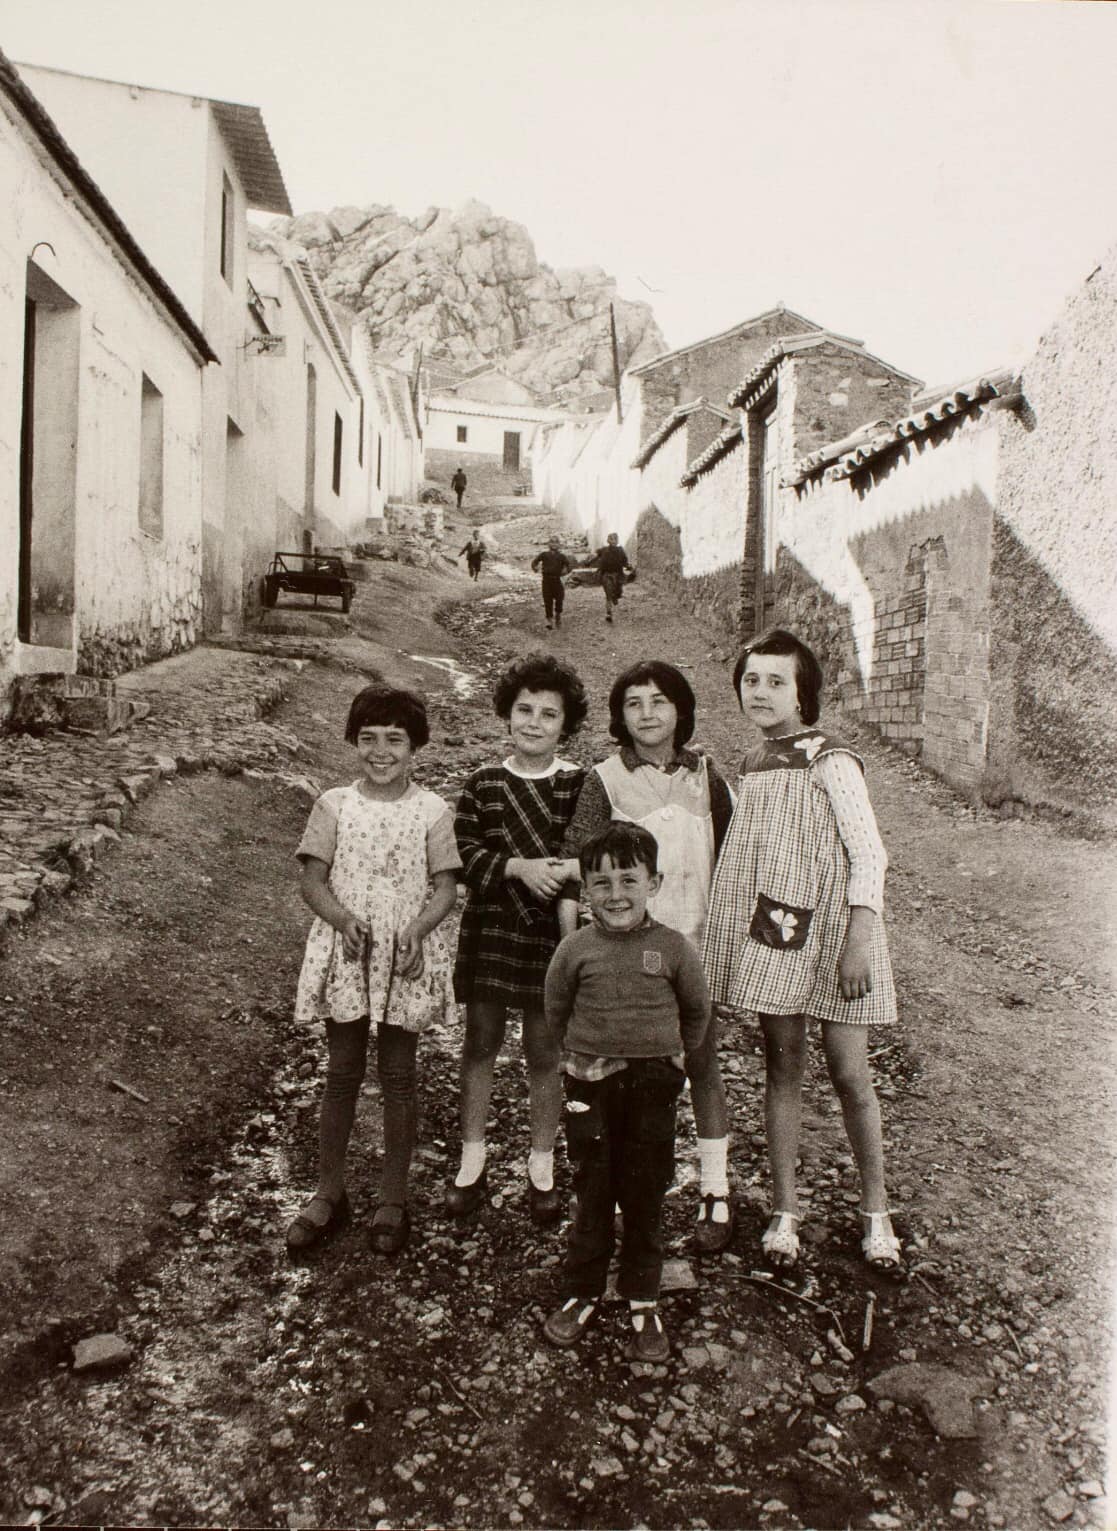 Unas niñas y un peque en una calle empinada y sin asfaltar en la barriada San Sebastián en 1961. Fotografía Oriol Maspons